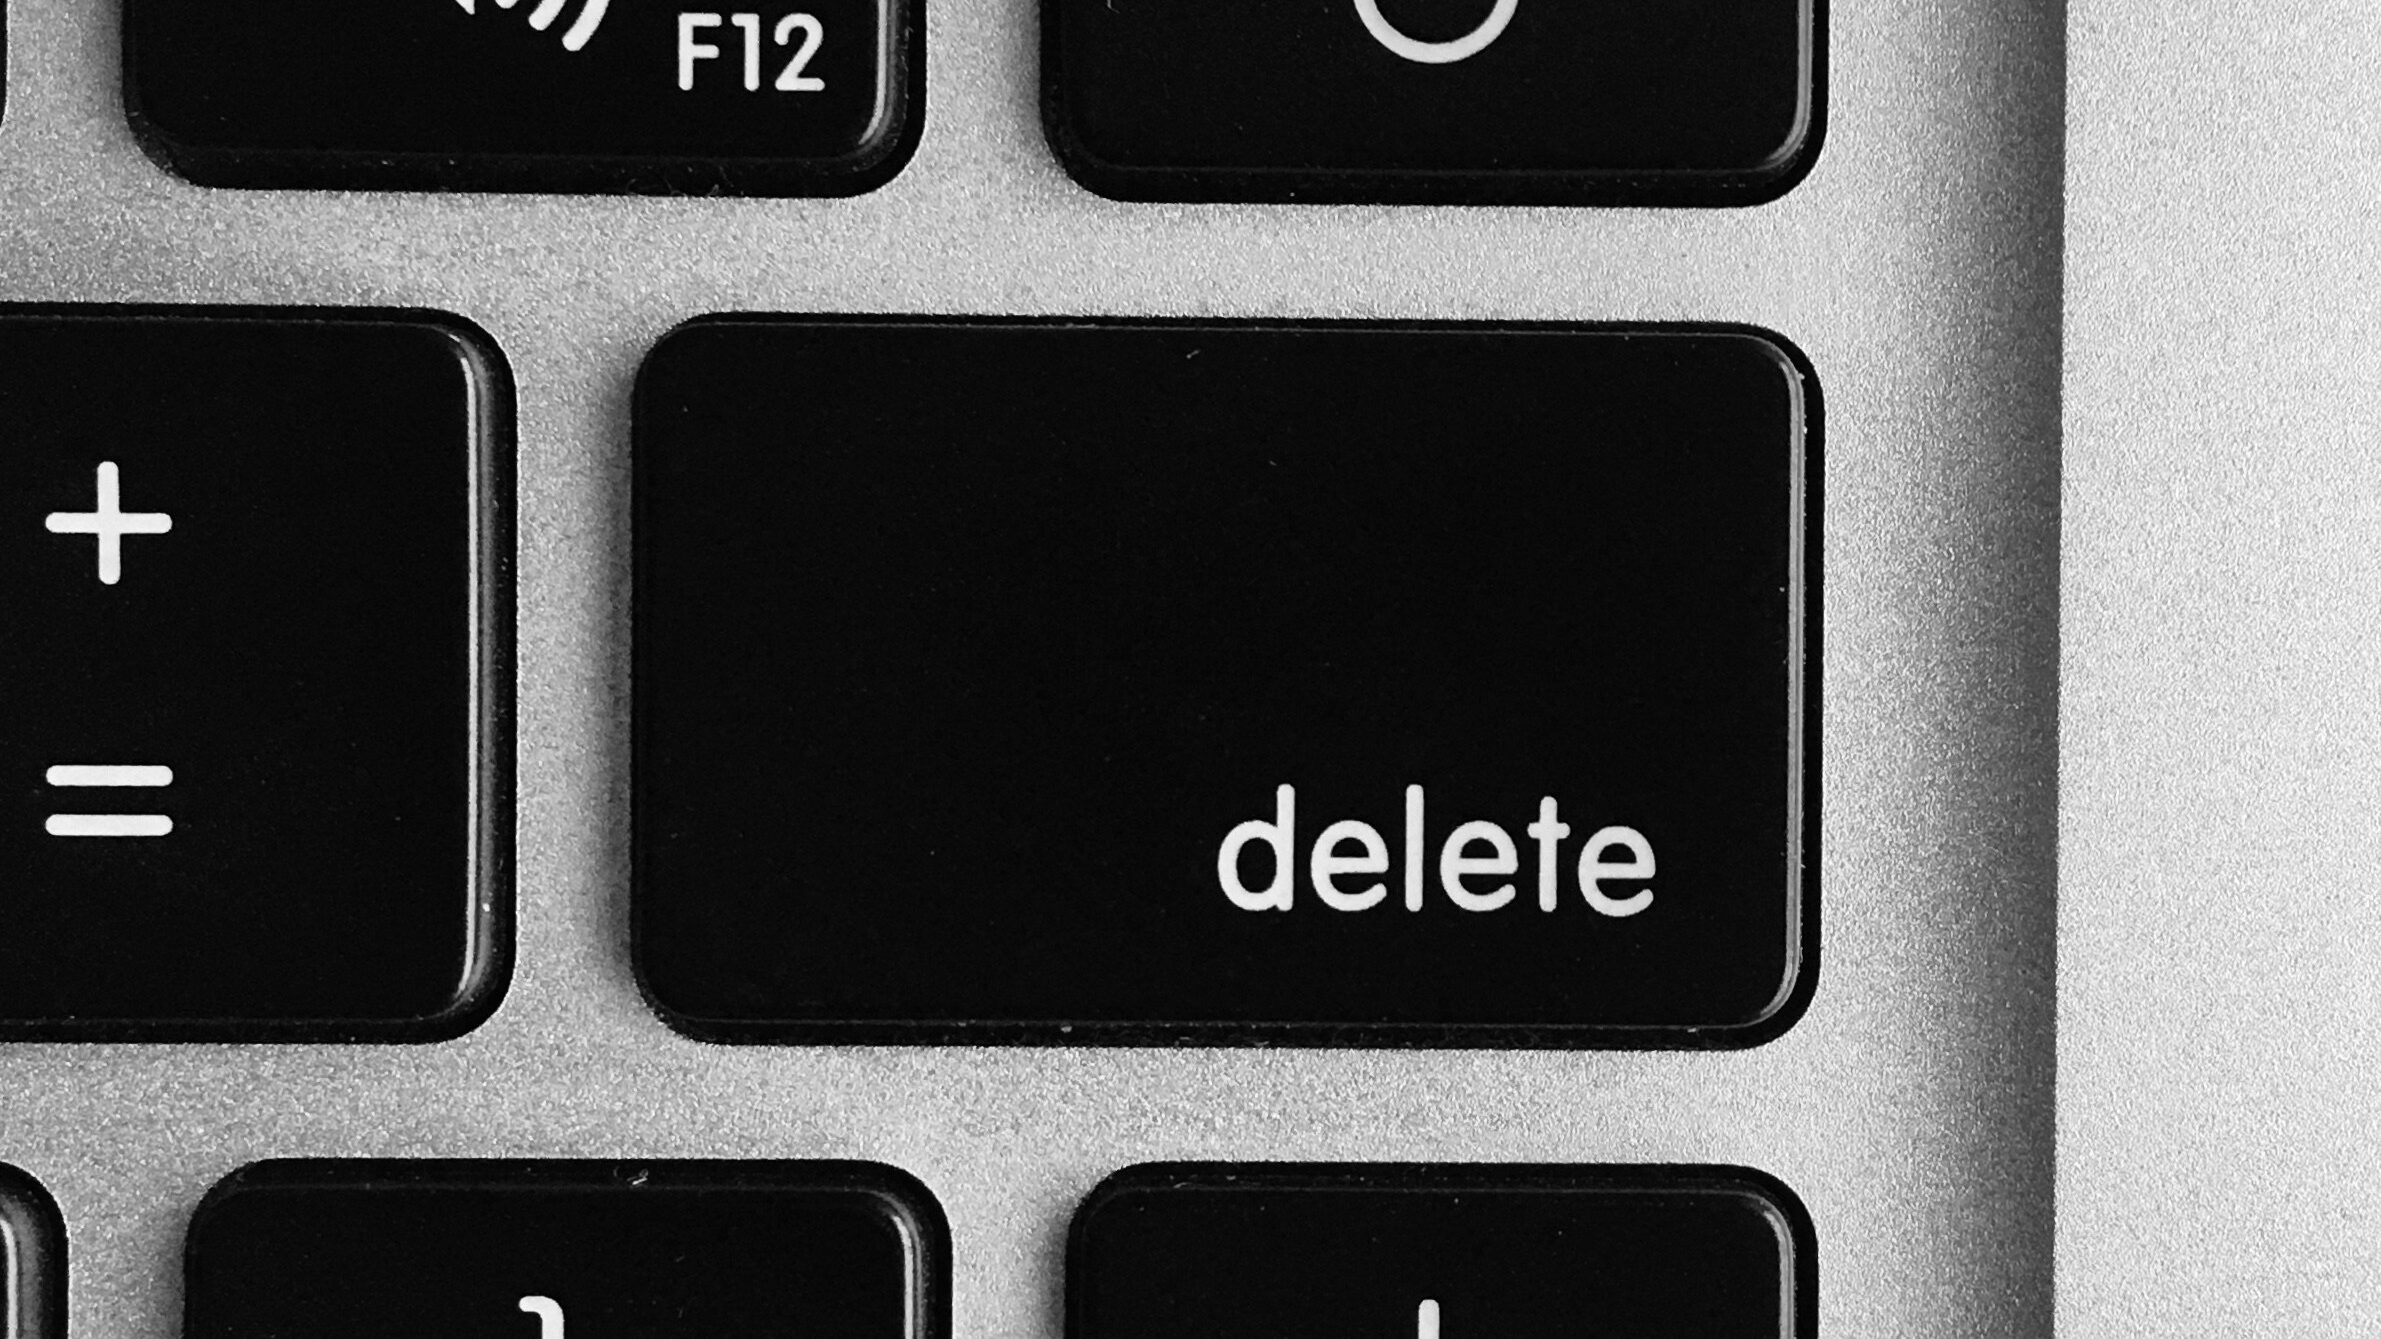 Botão delete docomputador